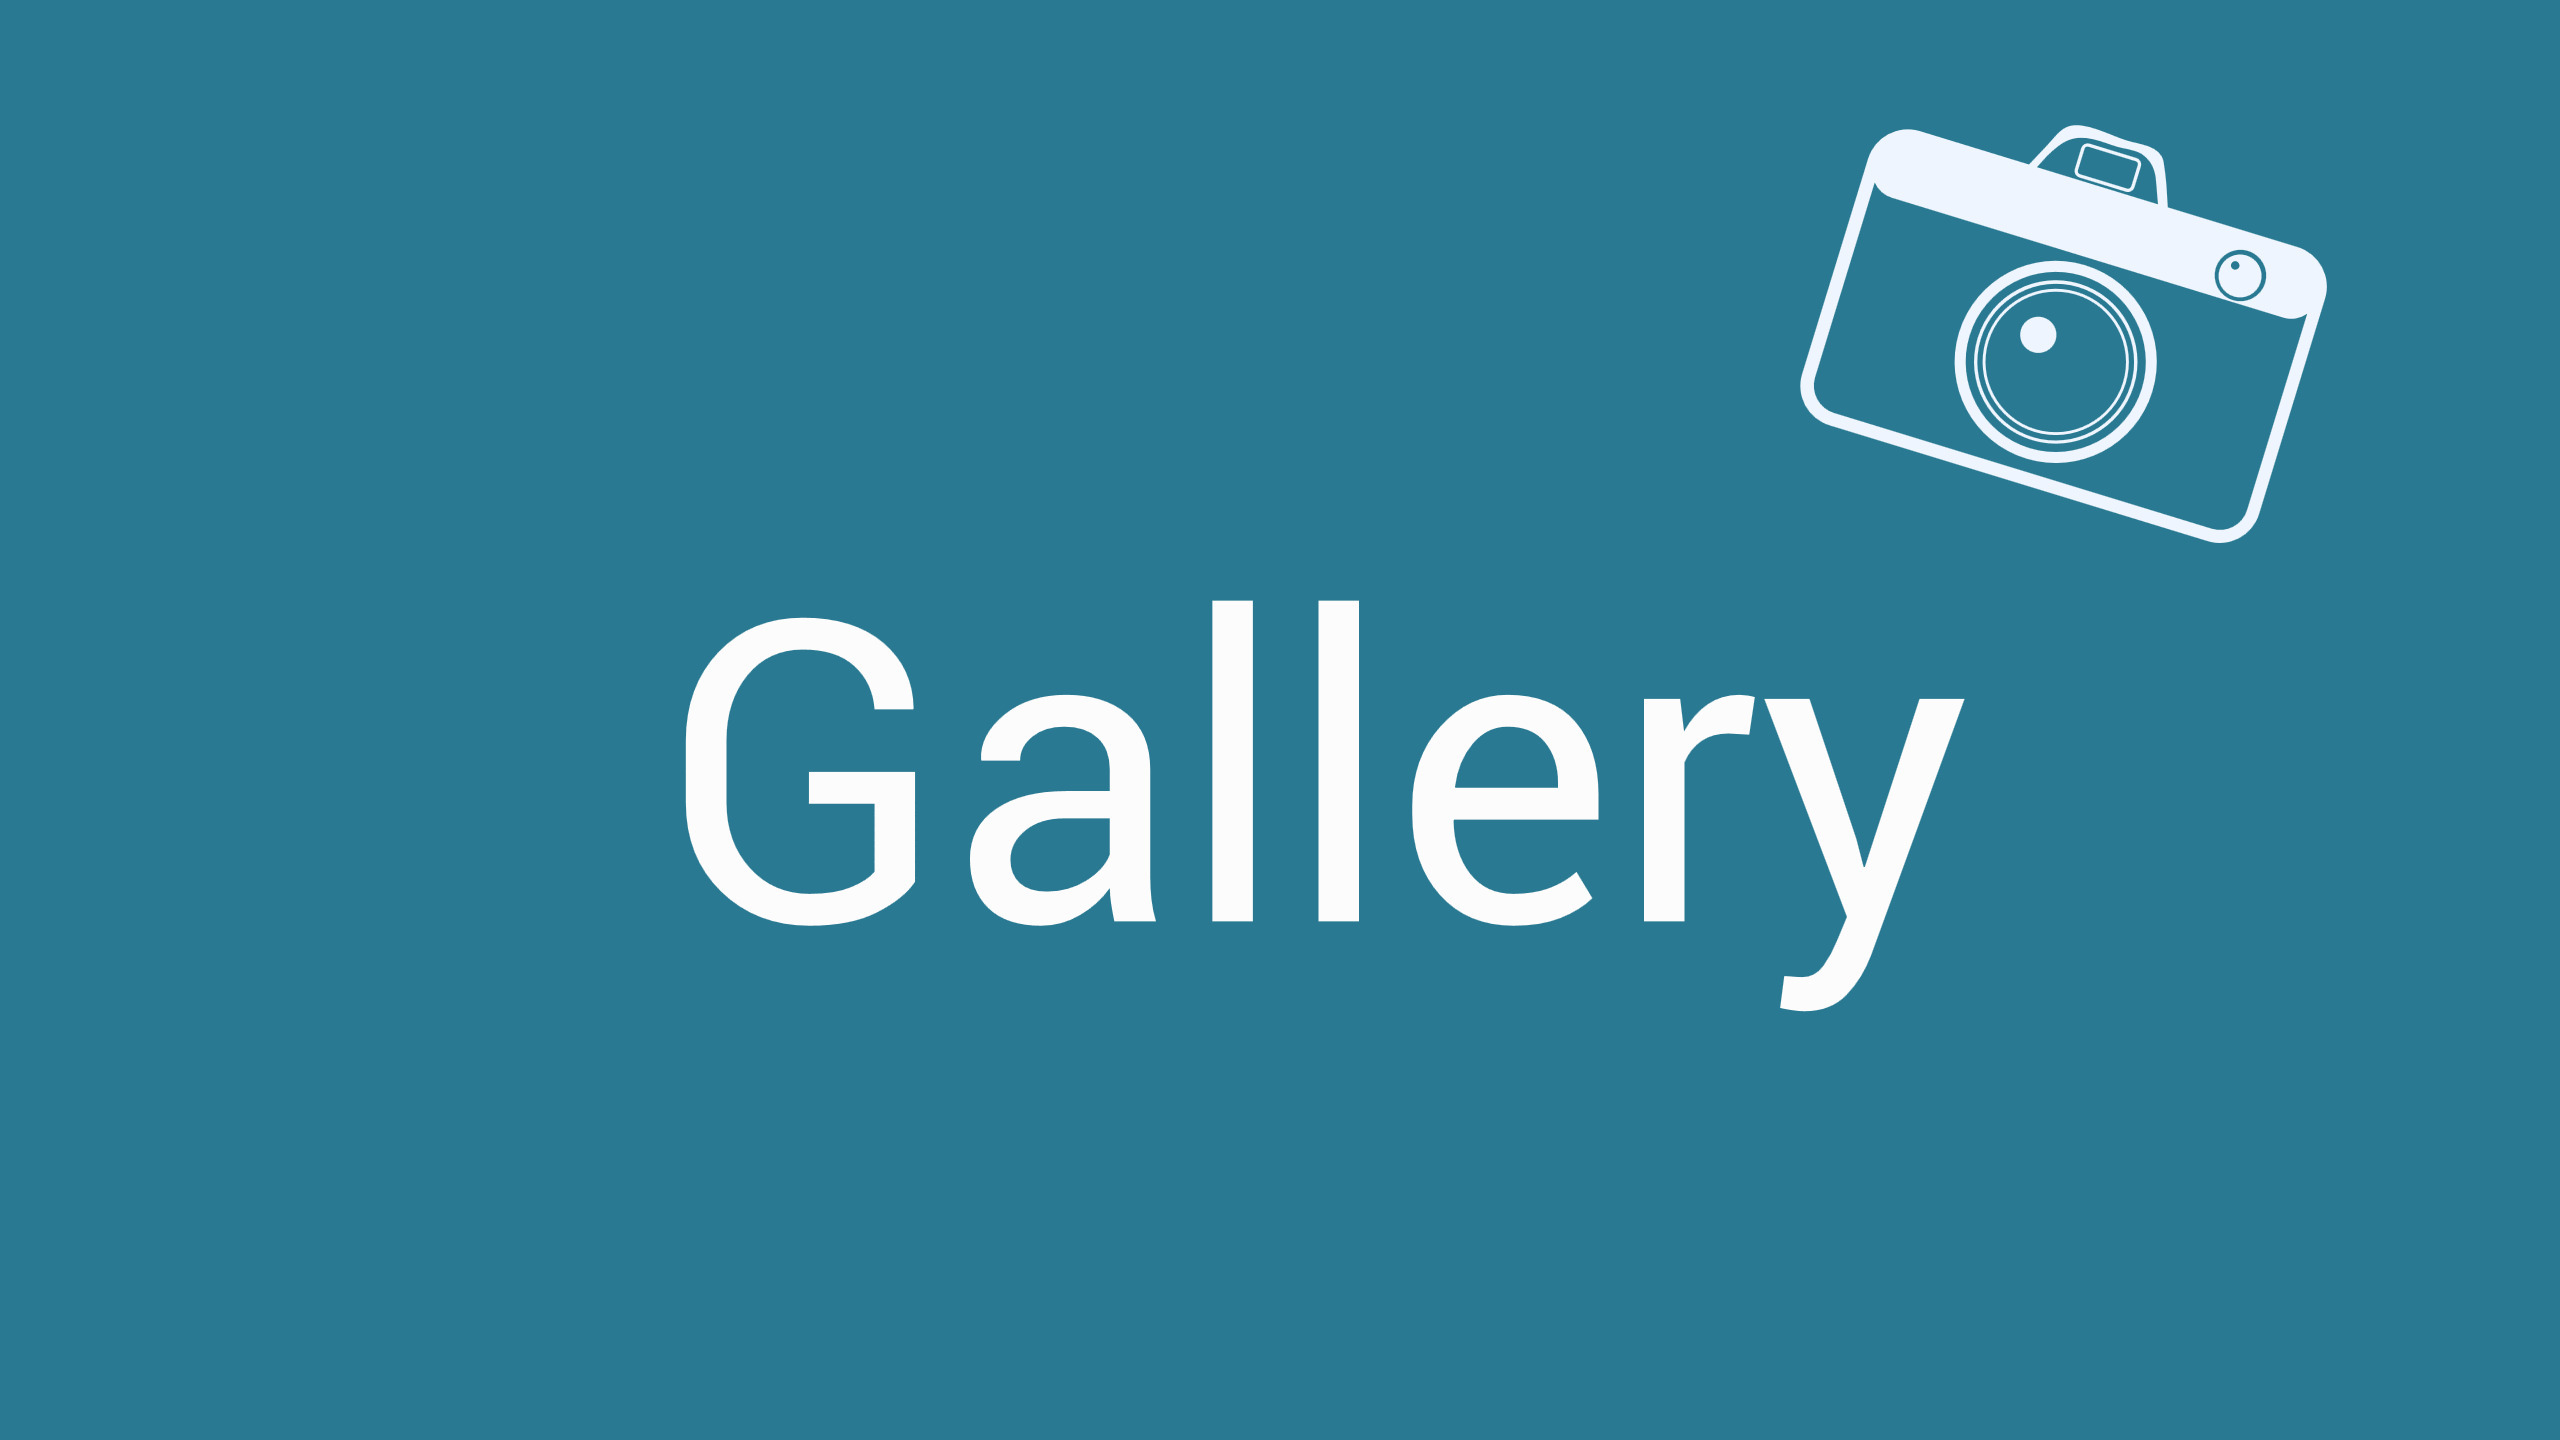 Vorschlag-Gallery-Button-Menu